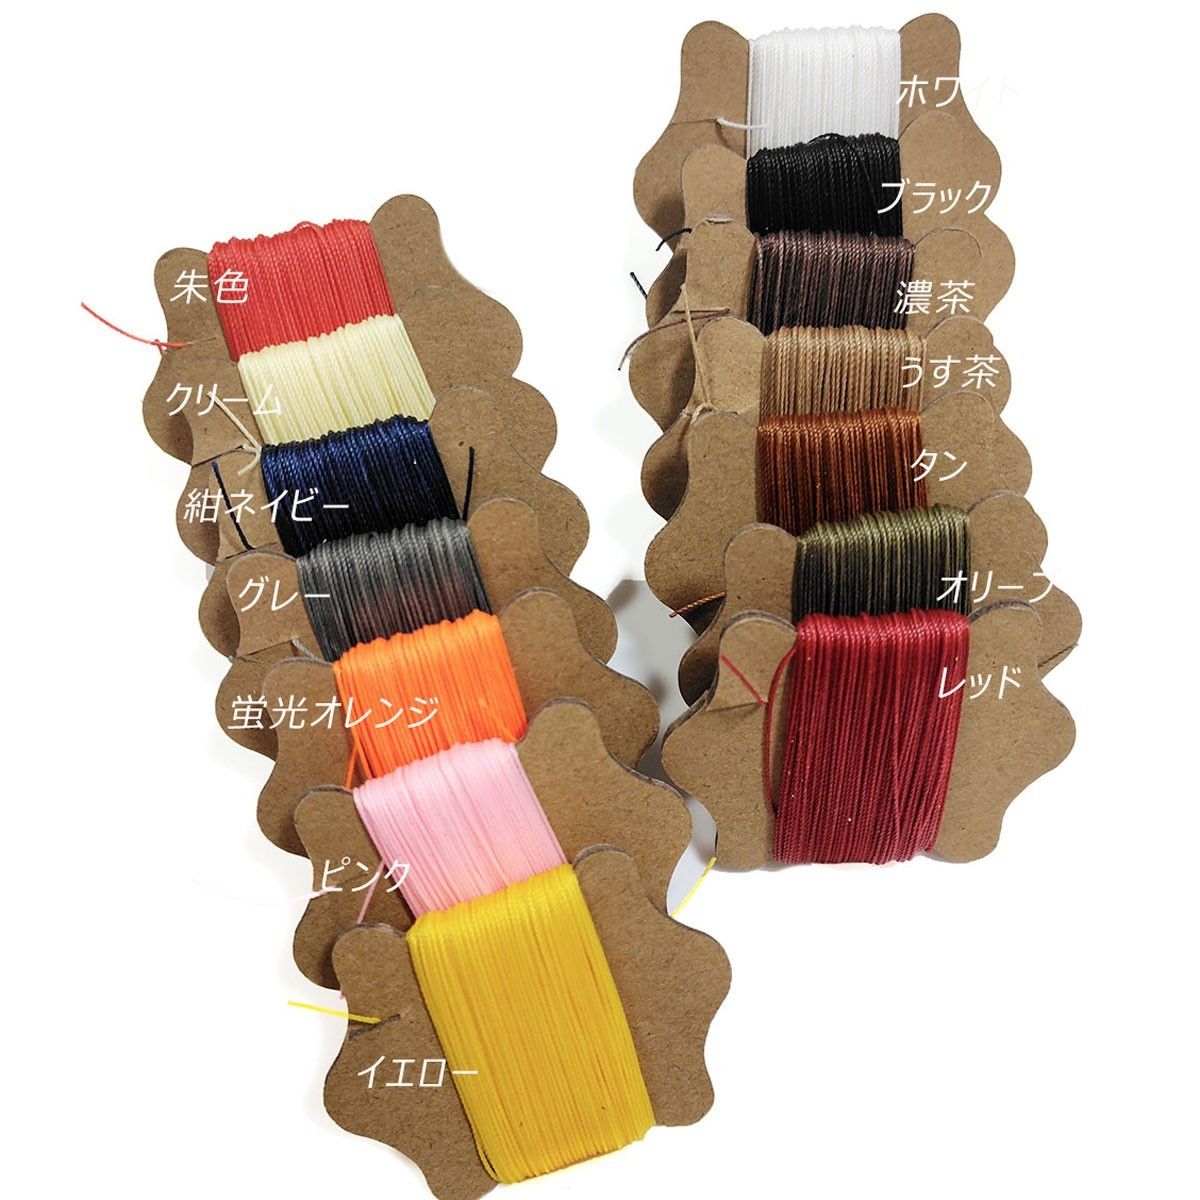 レザークラフト 糸 0.45mm 黄色 イエロー 1個 丸紐 ロウビキ糸 ワックスコード 蝋引き糸 ロウ引き糸 ポリエステル